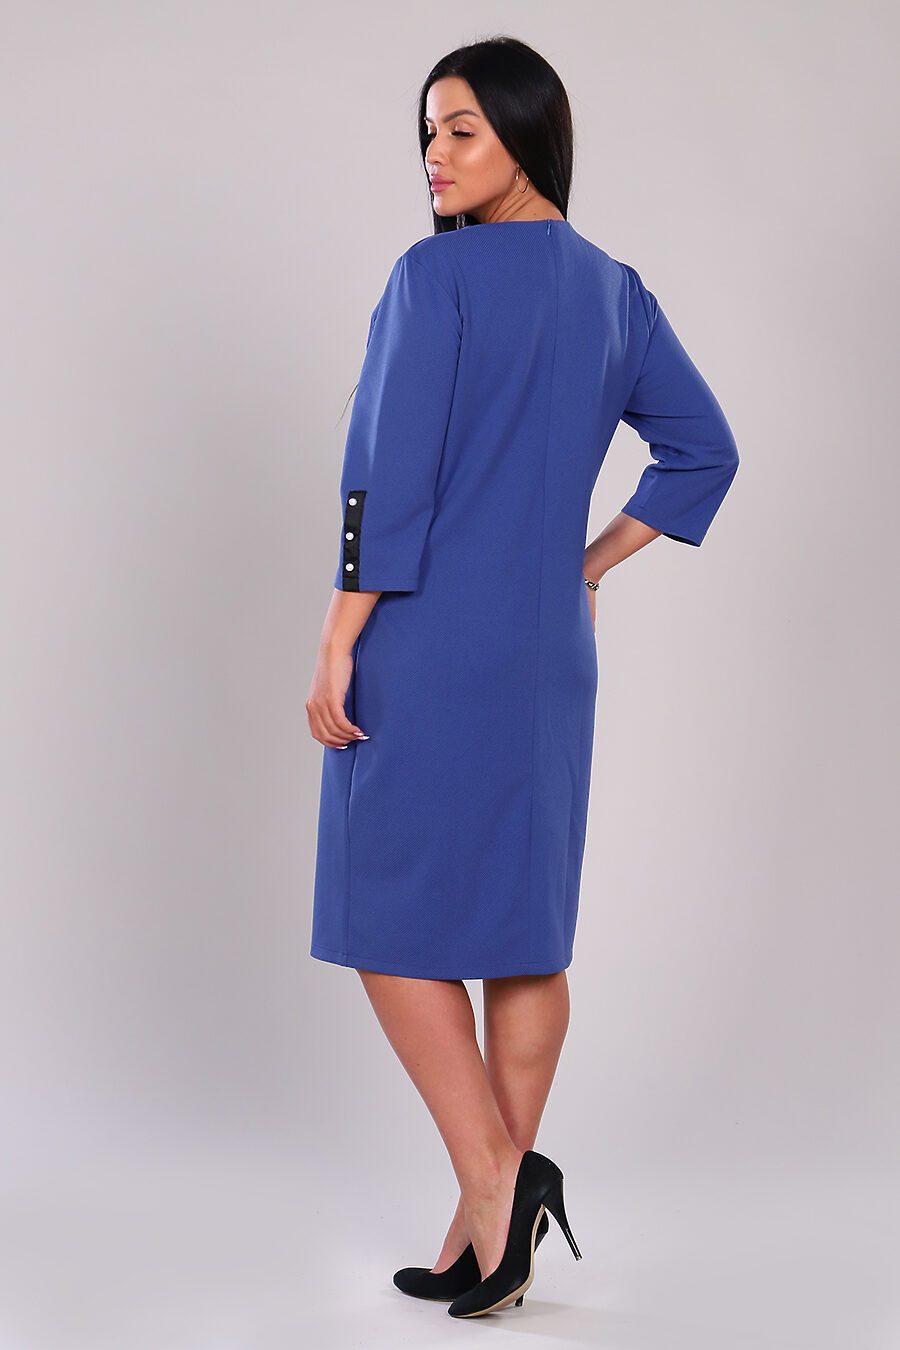 Платье 31598 для женщин НАТАЛИ 741766 купить оптом от производителя. Совместная покупка женской одежды в OptMoyo